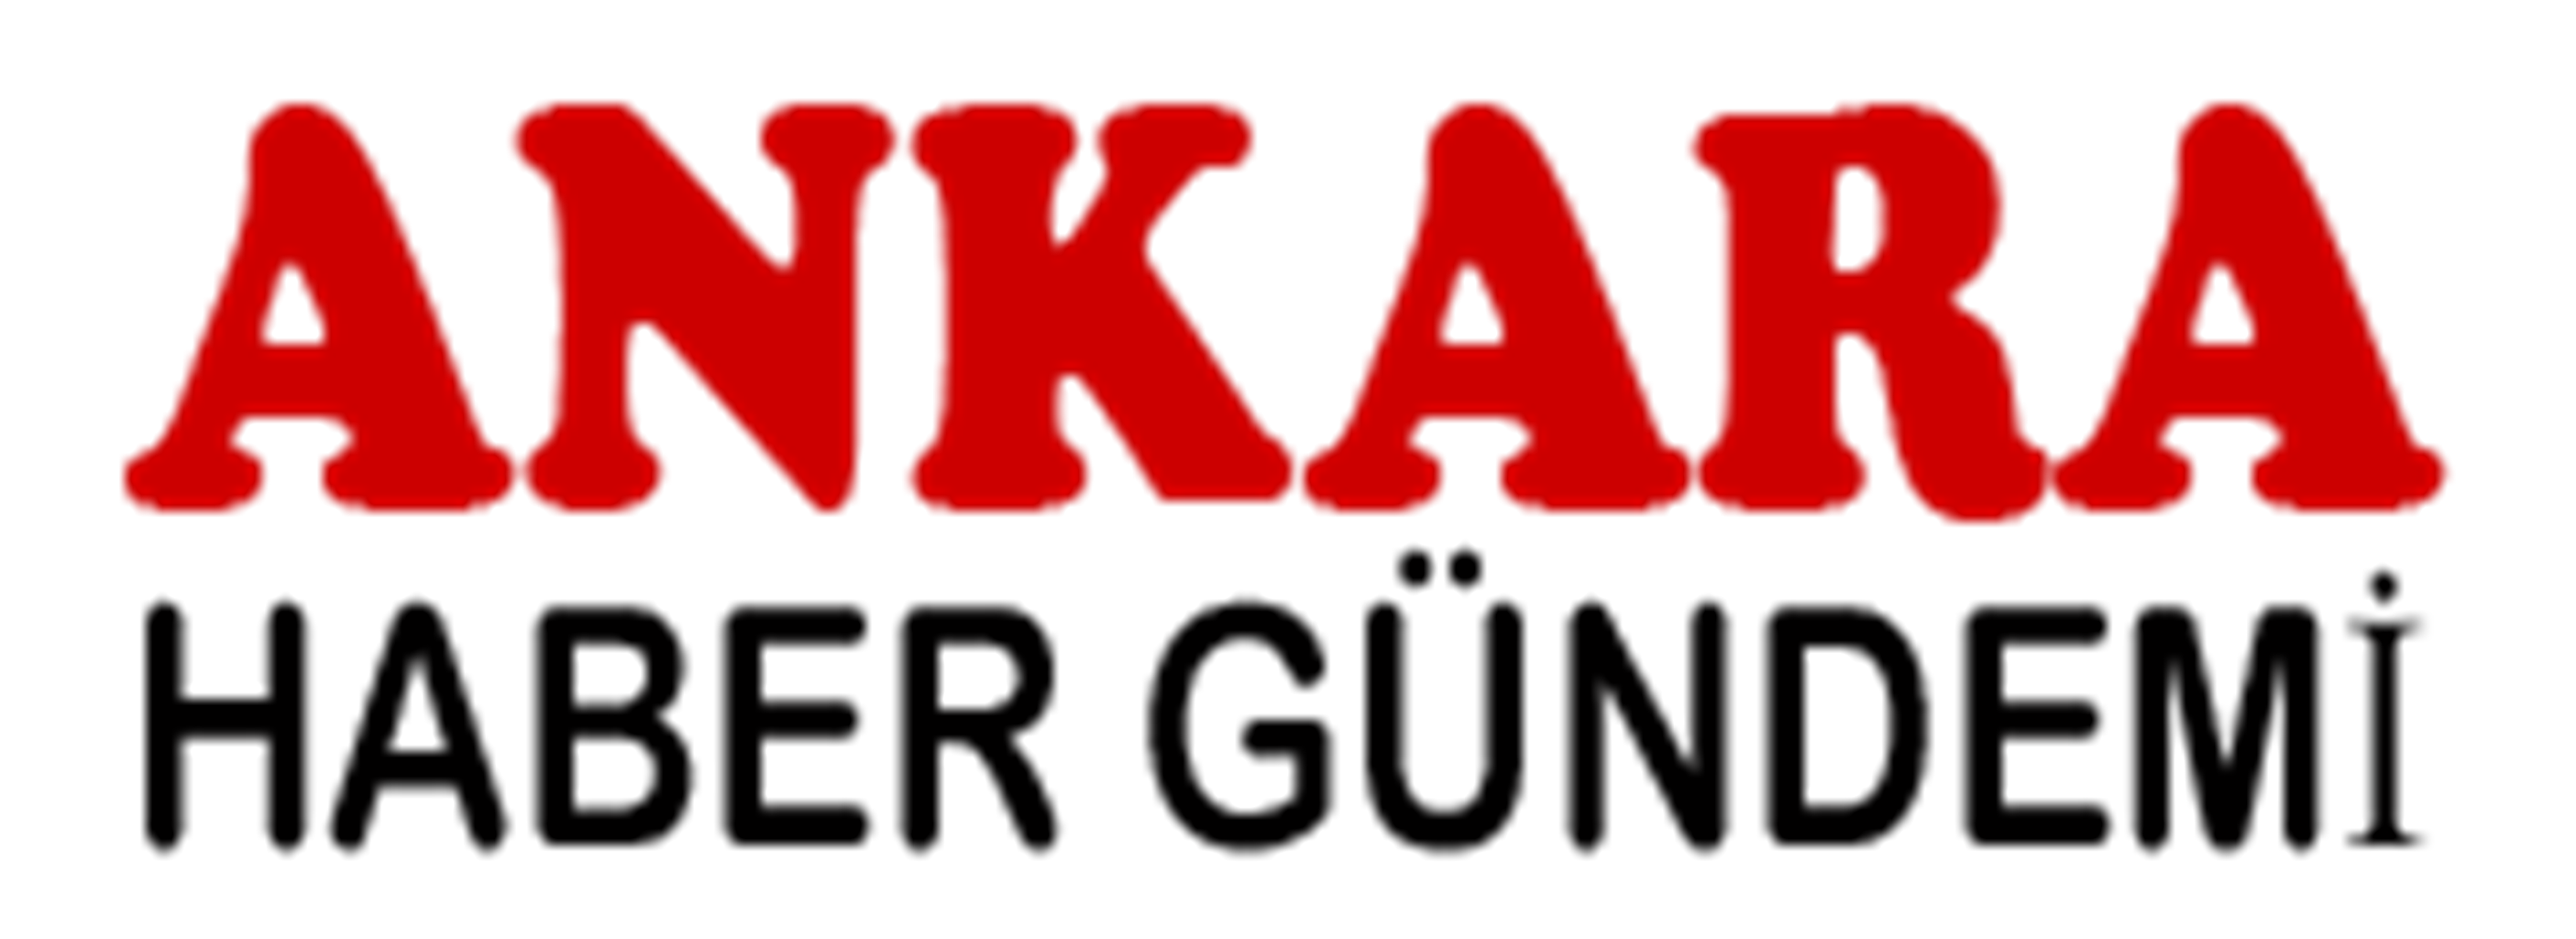 Ankara Haber Gündemi